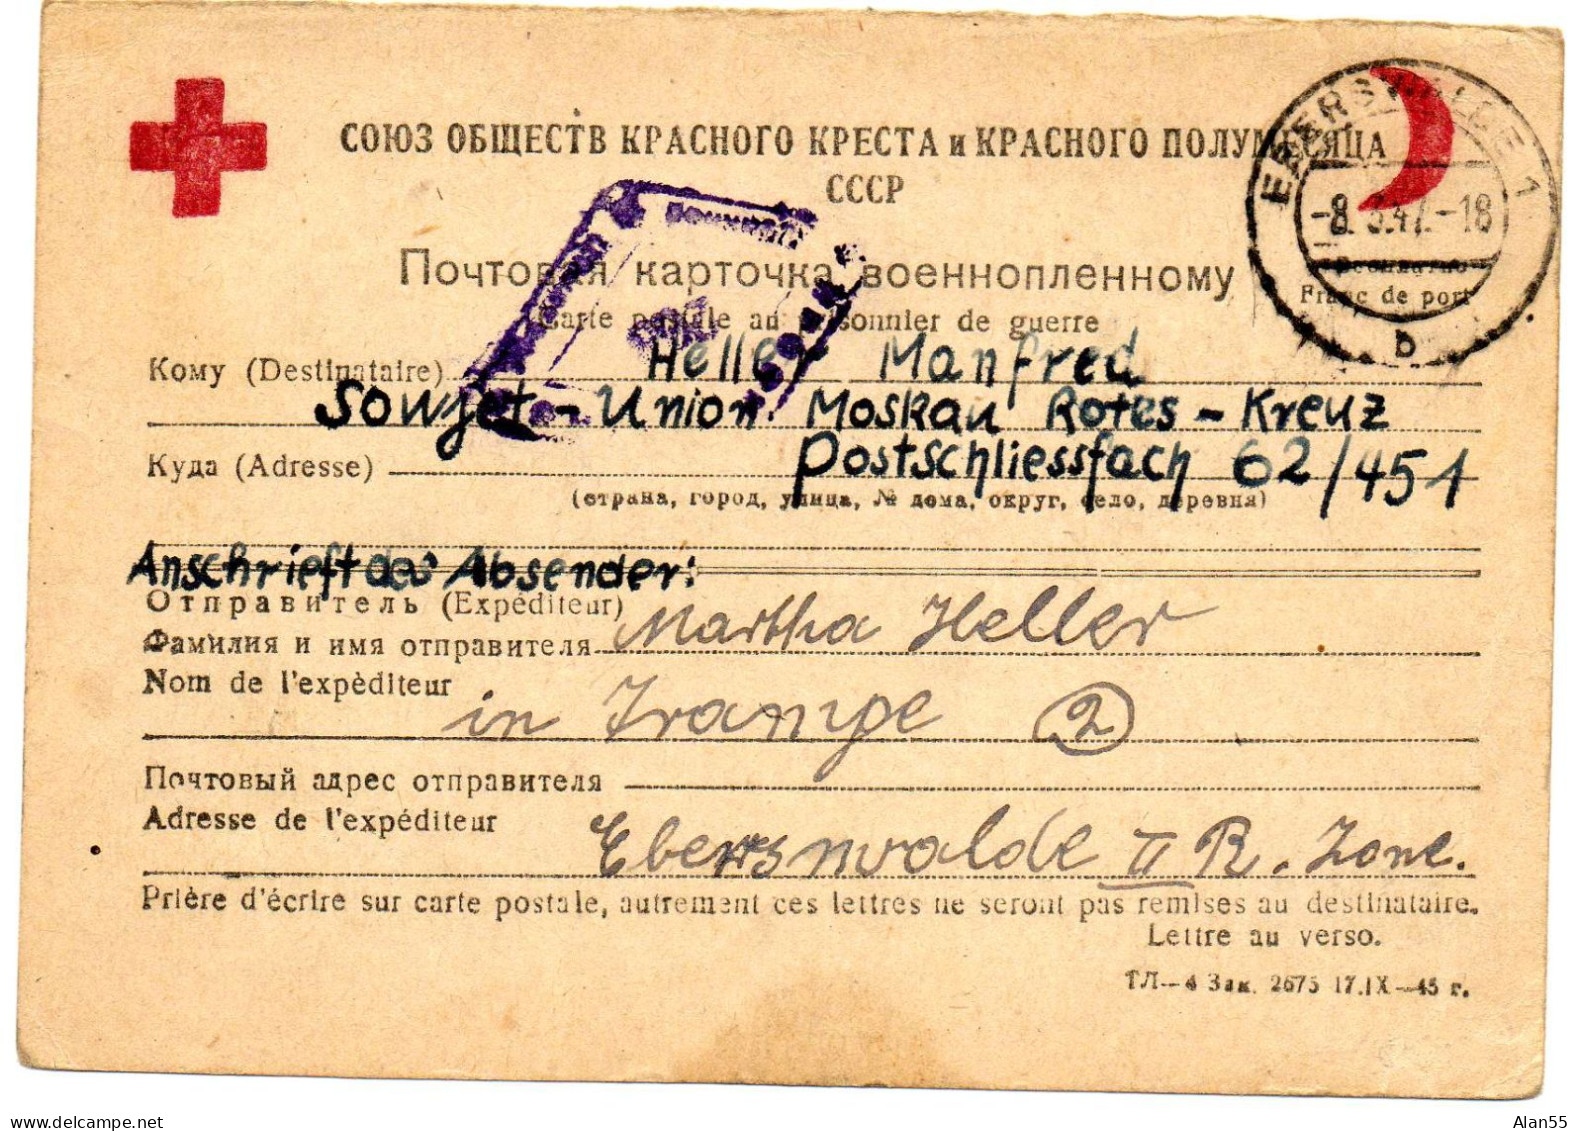 URSS. 1947. CARTE FAMILIALE CROIX-ROUGE. (SENS ALLEMAGNE-URSS). CENSURE - Storia Postale